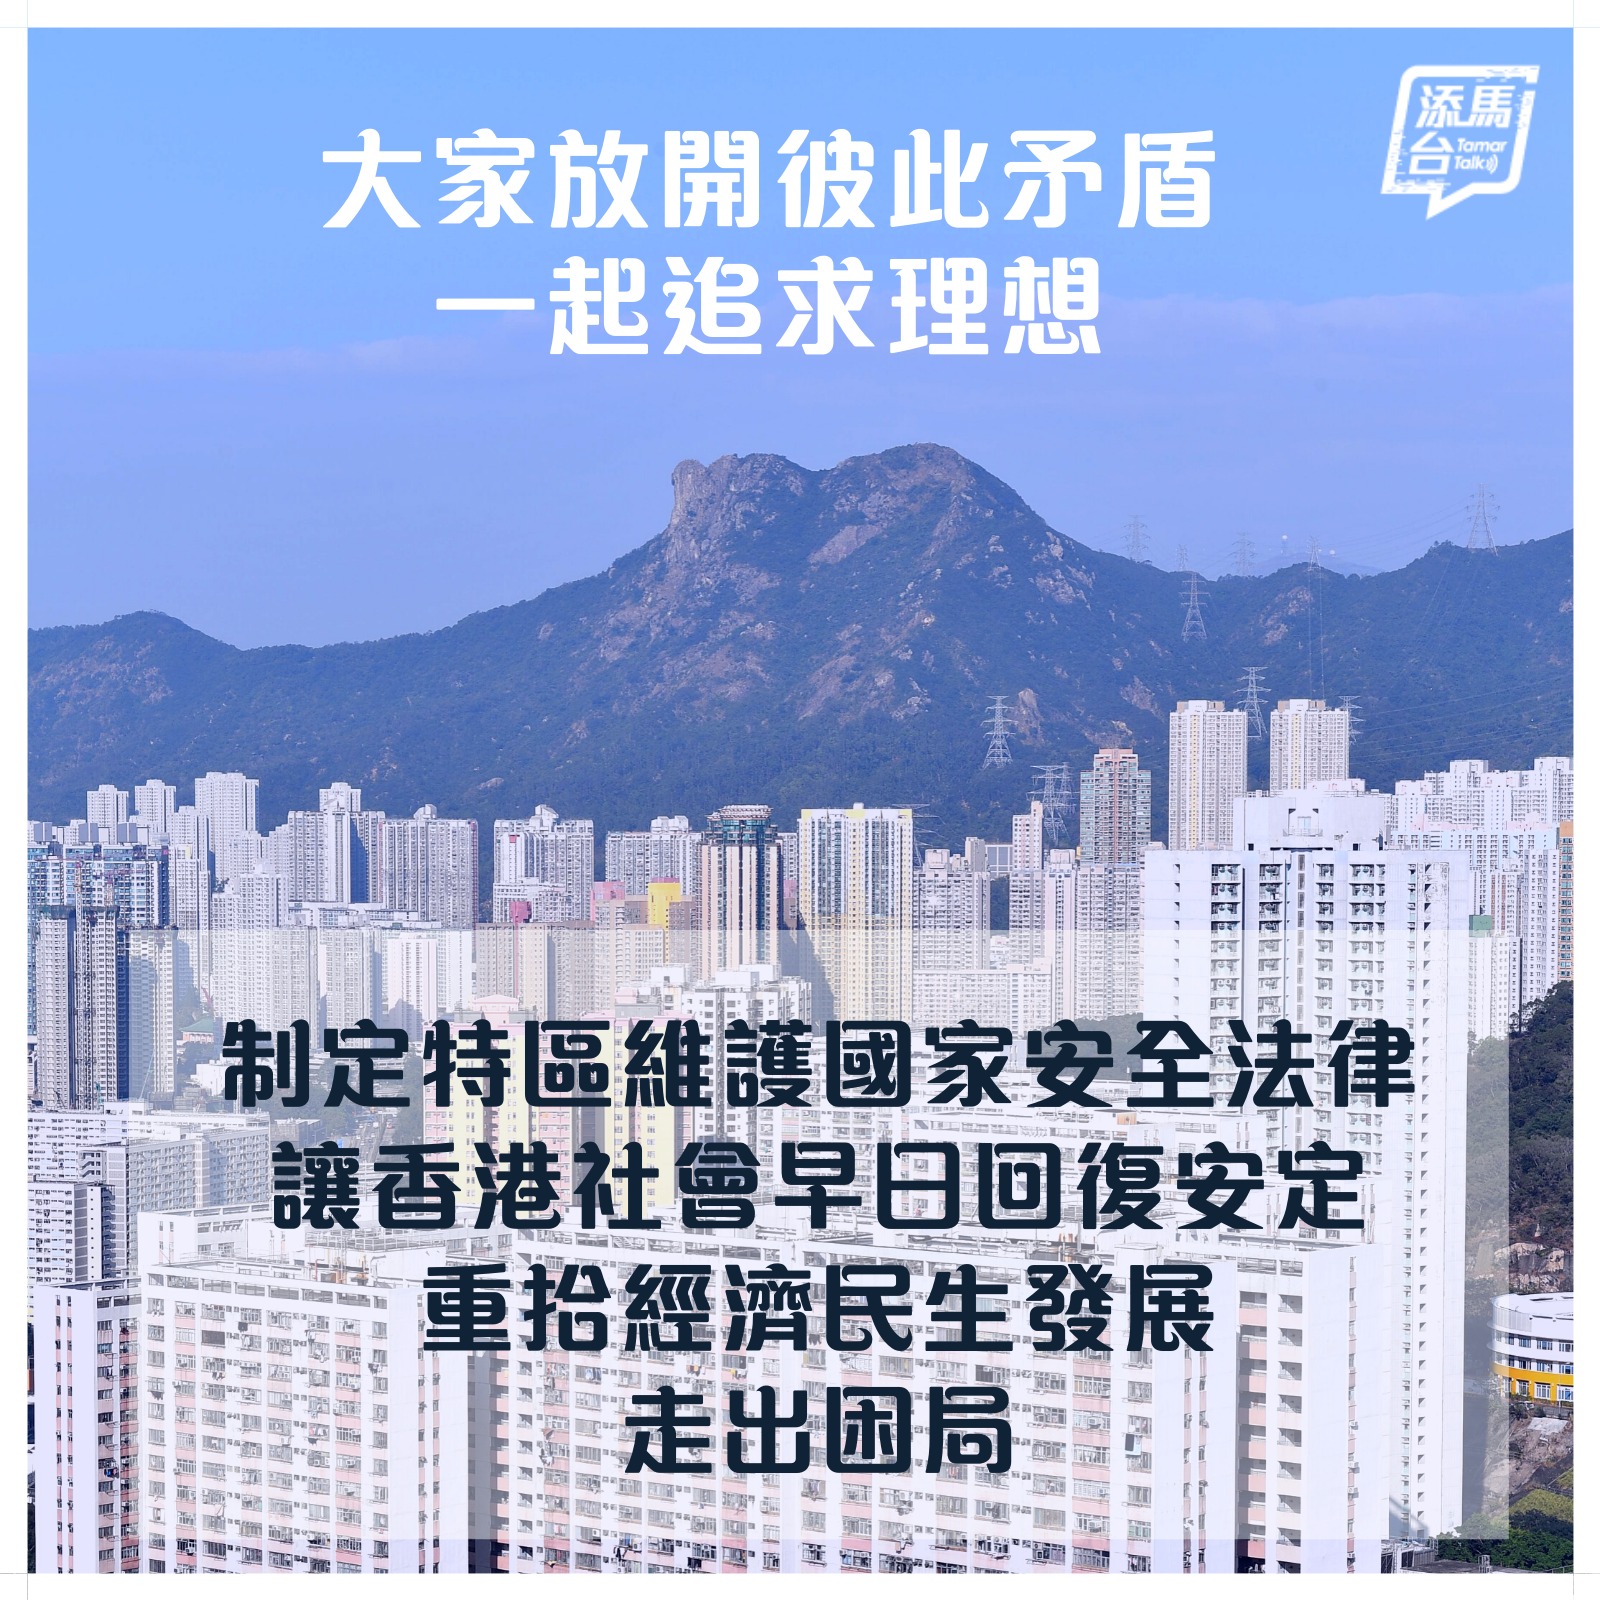 建立香港特区维护国家安全法